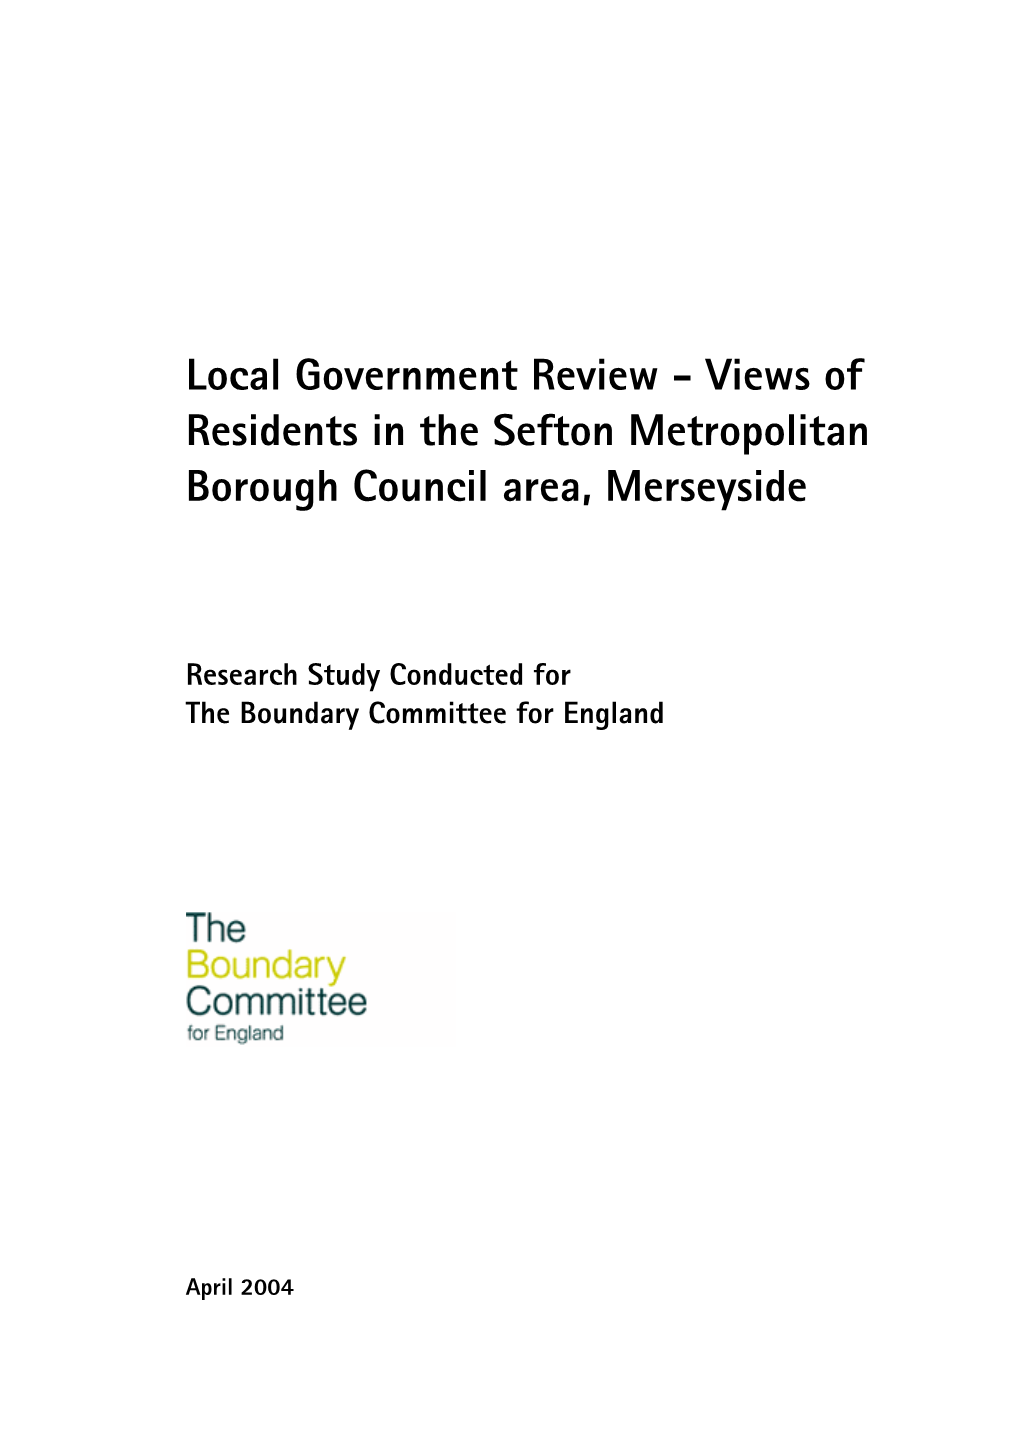 Views of Residents in the Sefton Metropolitan Borough Council Area, Merseyside